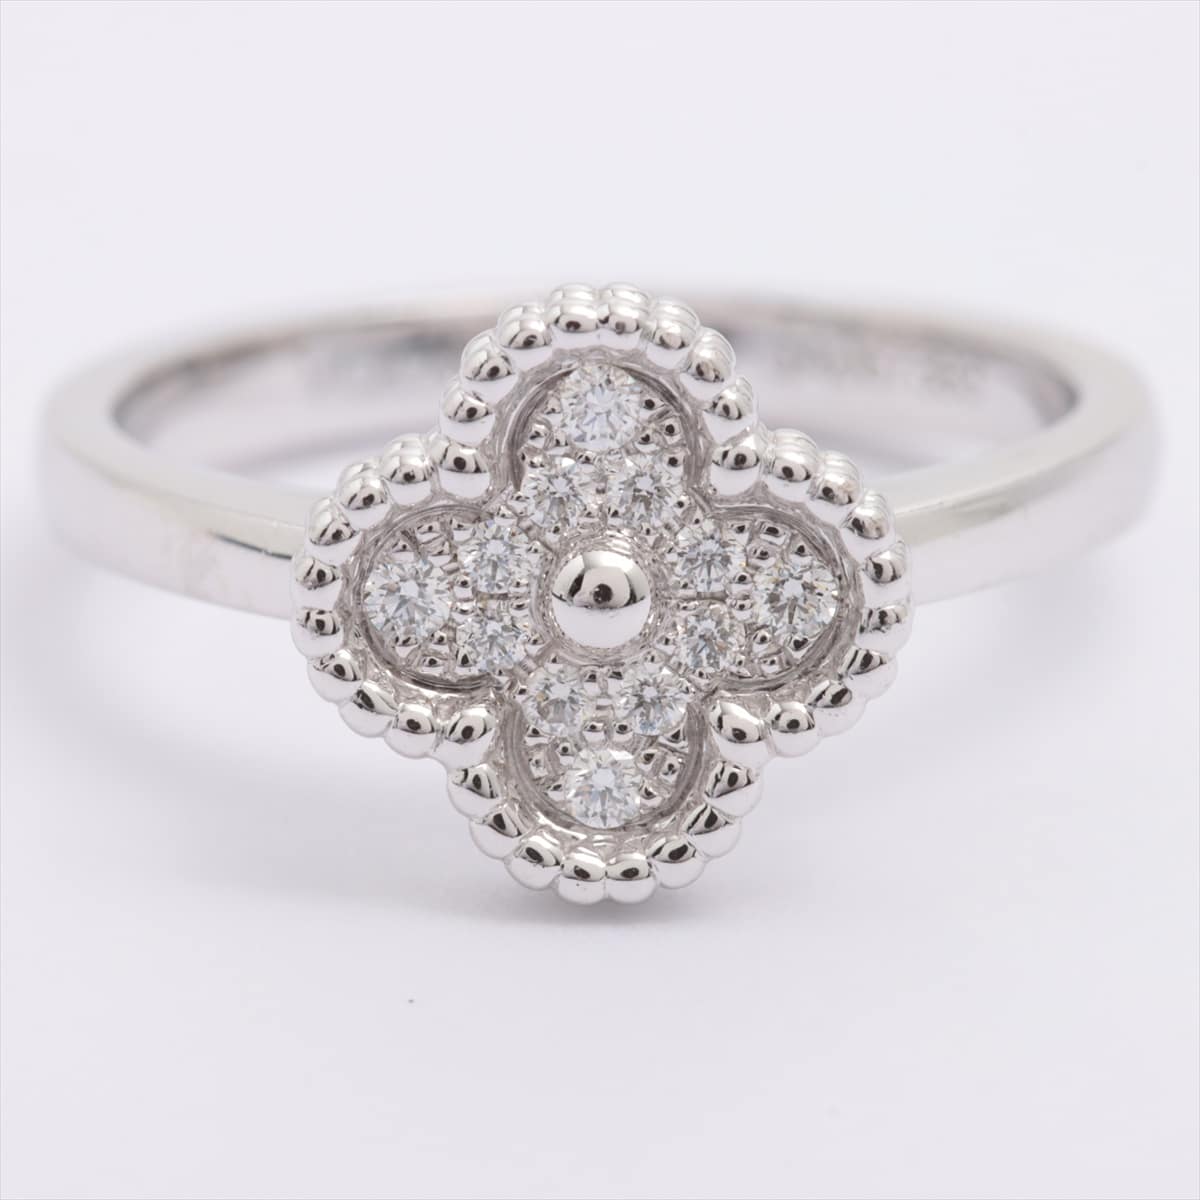 Van Cleef & Arpels Sweet Alhambra diamond rings 750(WG) 3.1g 47